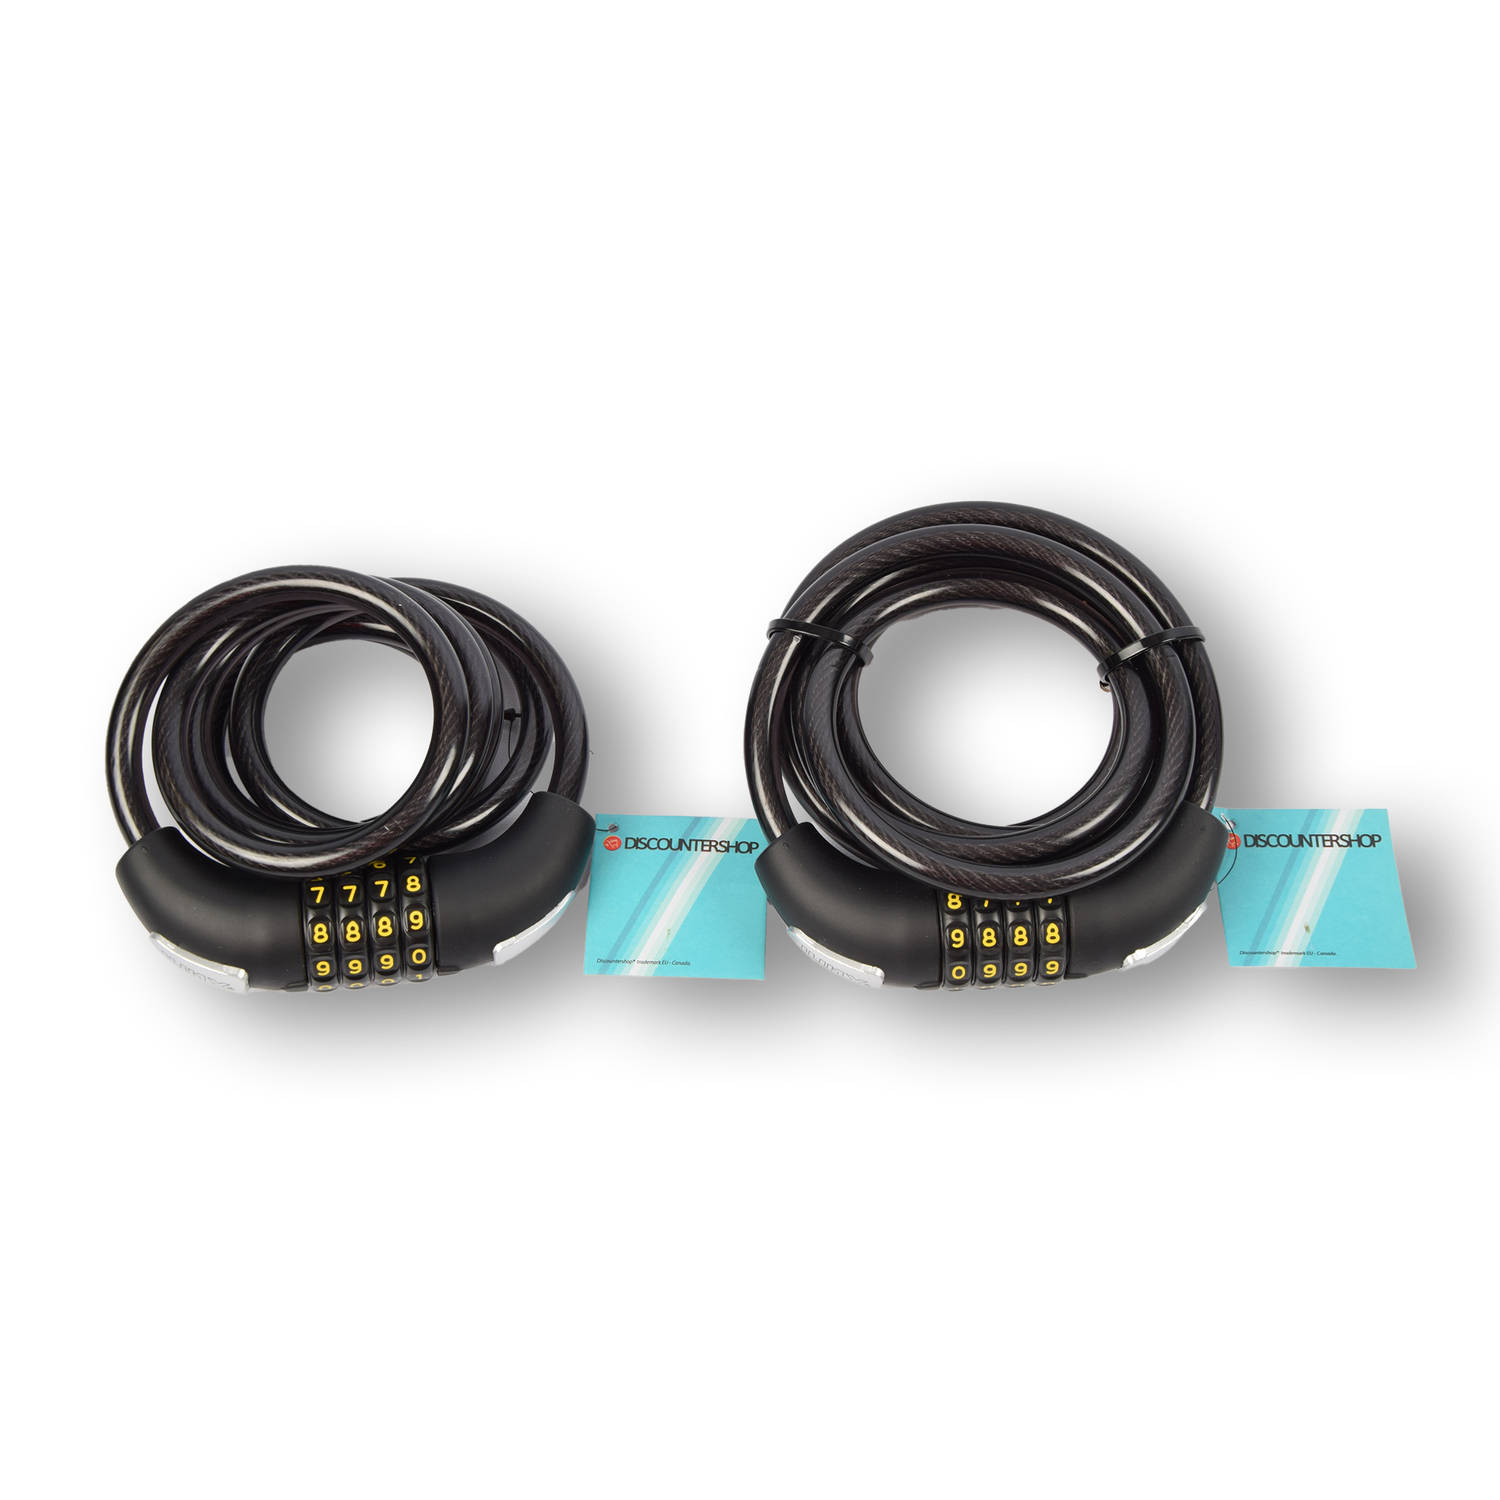 Discountershop Cijferslot Fiets Set - 2 Stuks Code Kabelsloten voor Fietsen - Kunststof en Rubber - 180cm x 10mm - Zwarte Fietsaccessoires